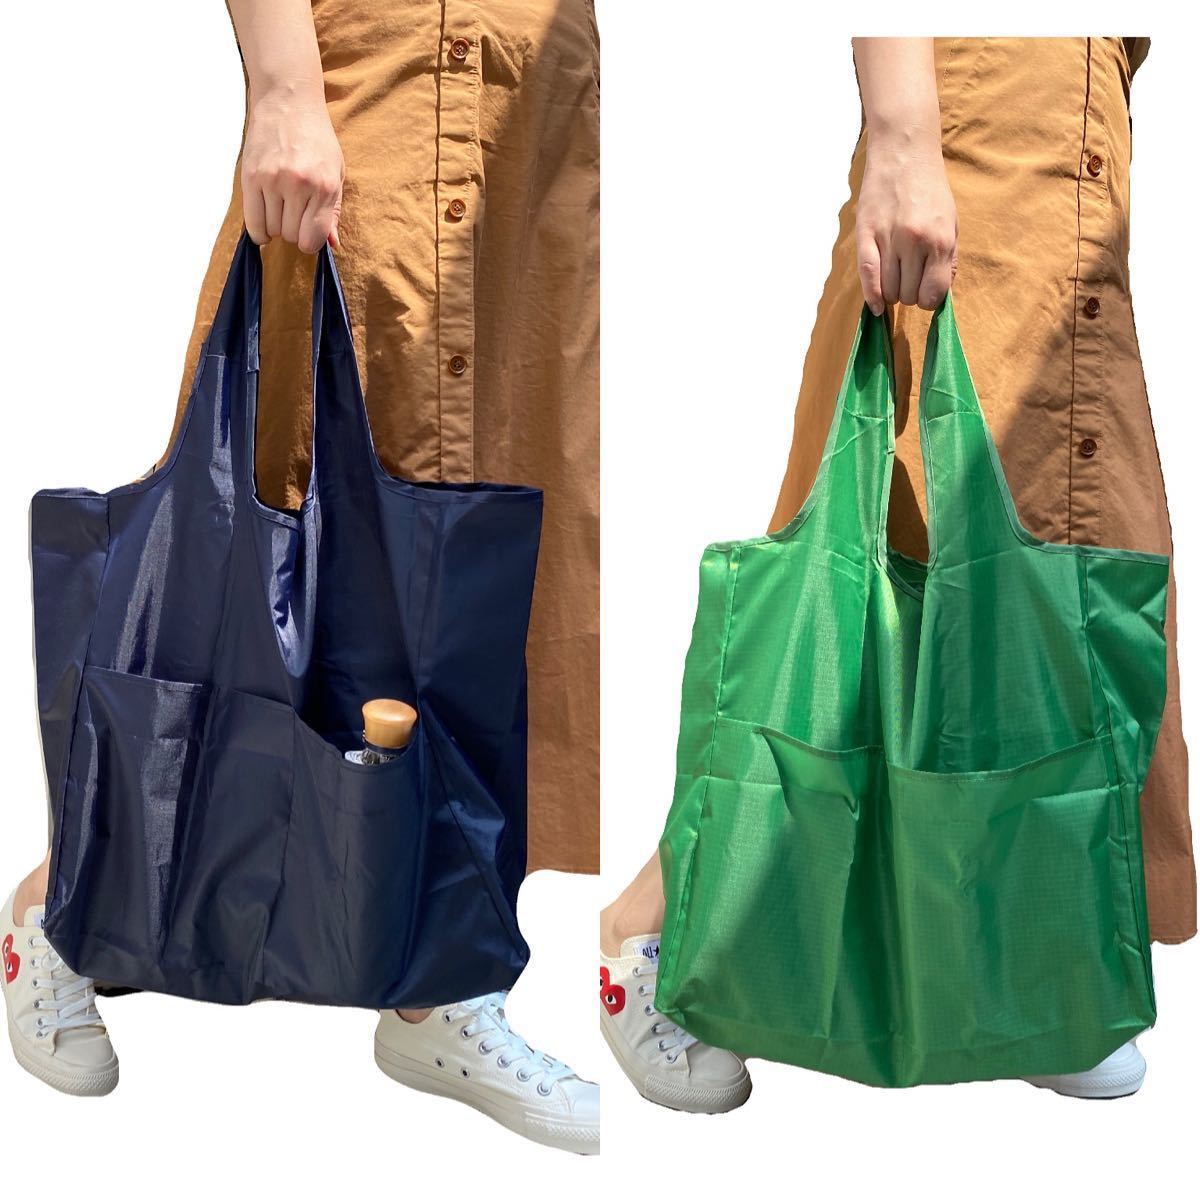 【日本品質】エコバッグ 買い物バッグ 折りたたみ 大容量 軽量 ネイビー